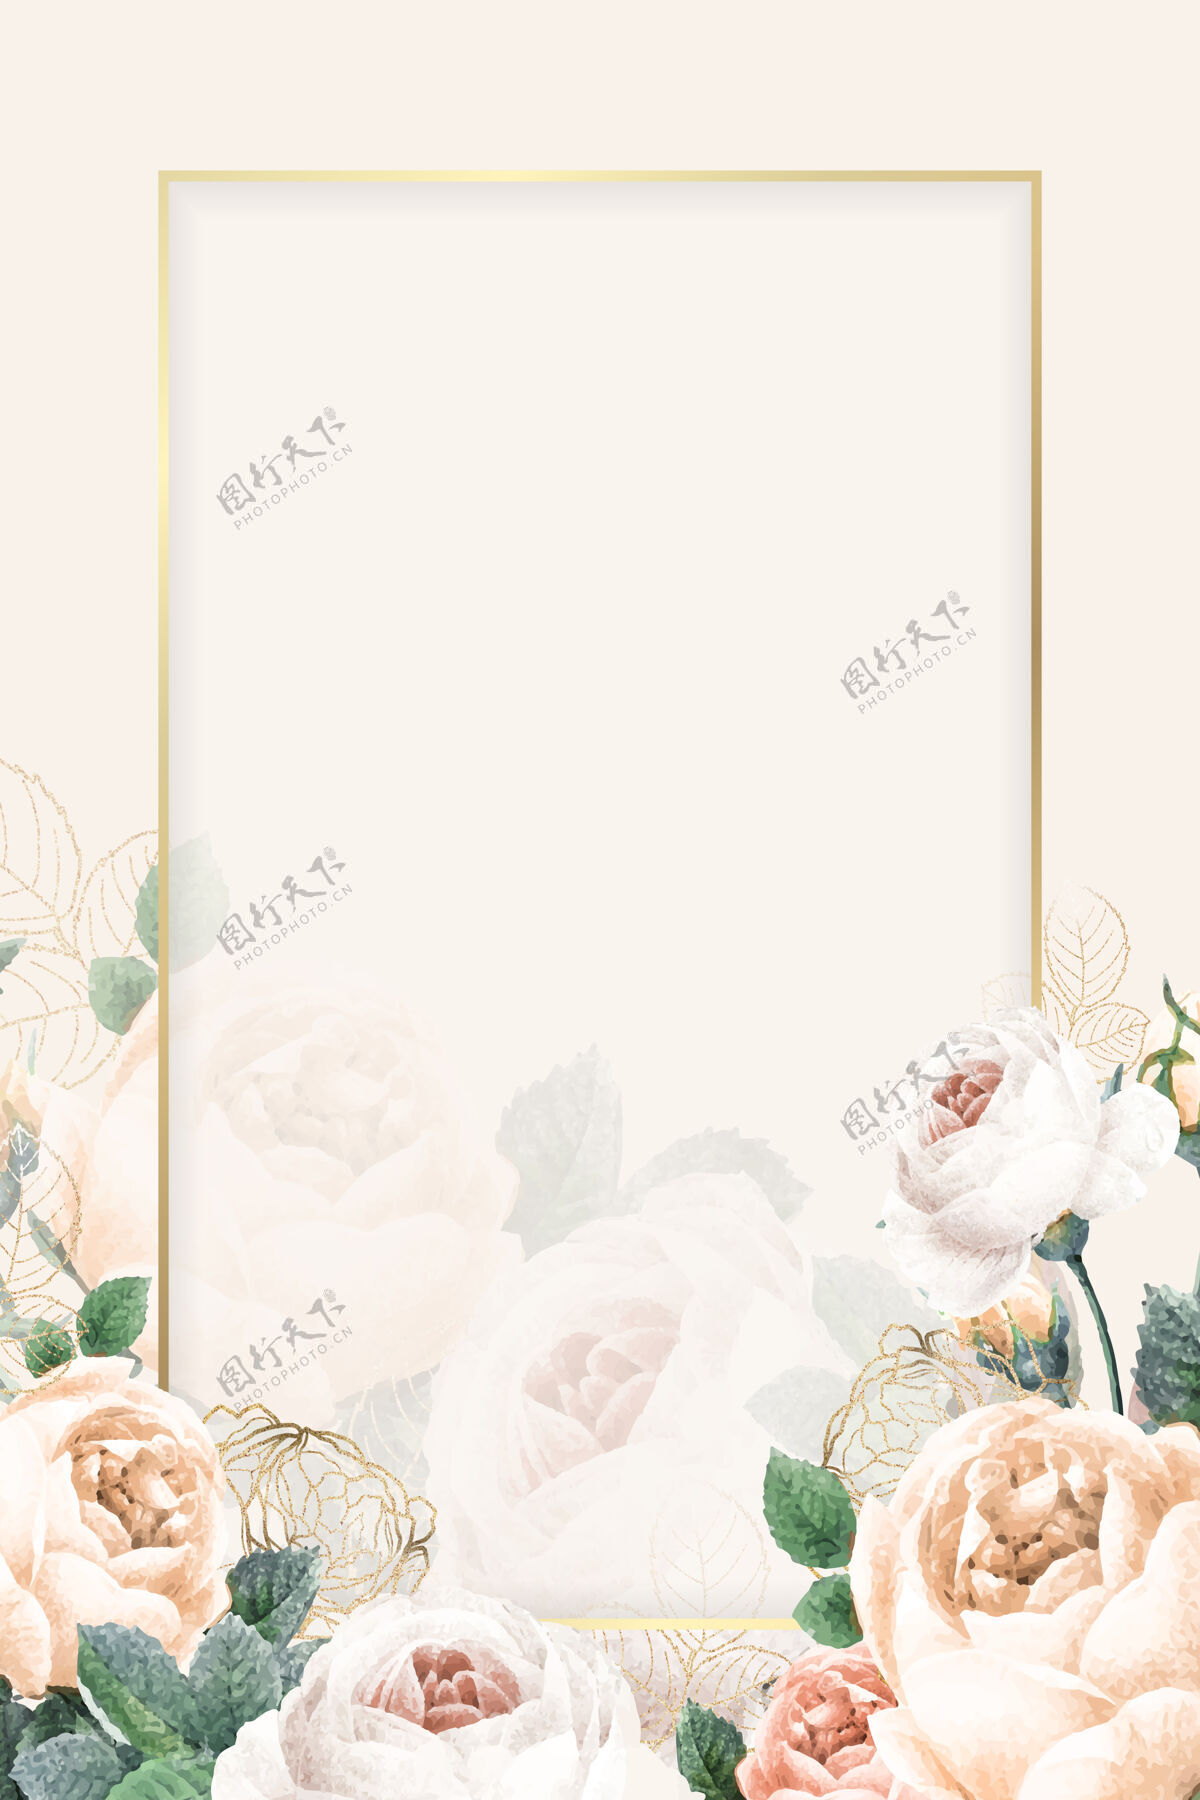 矩形空白的金色矩形框季节玫瑰风格